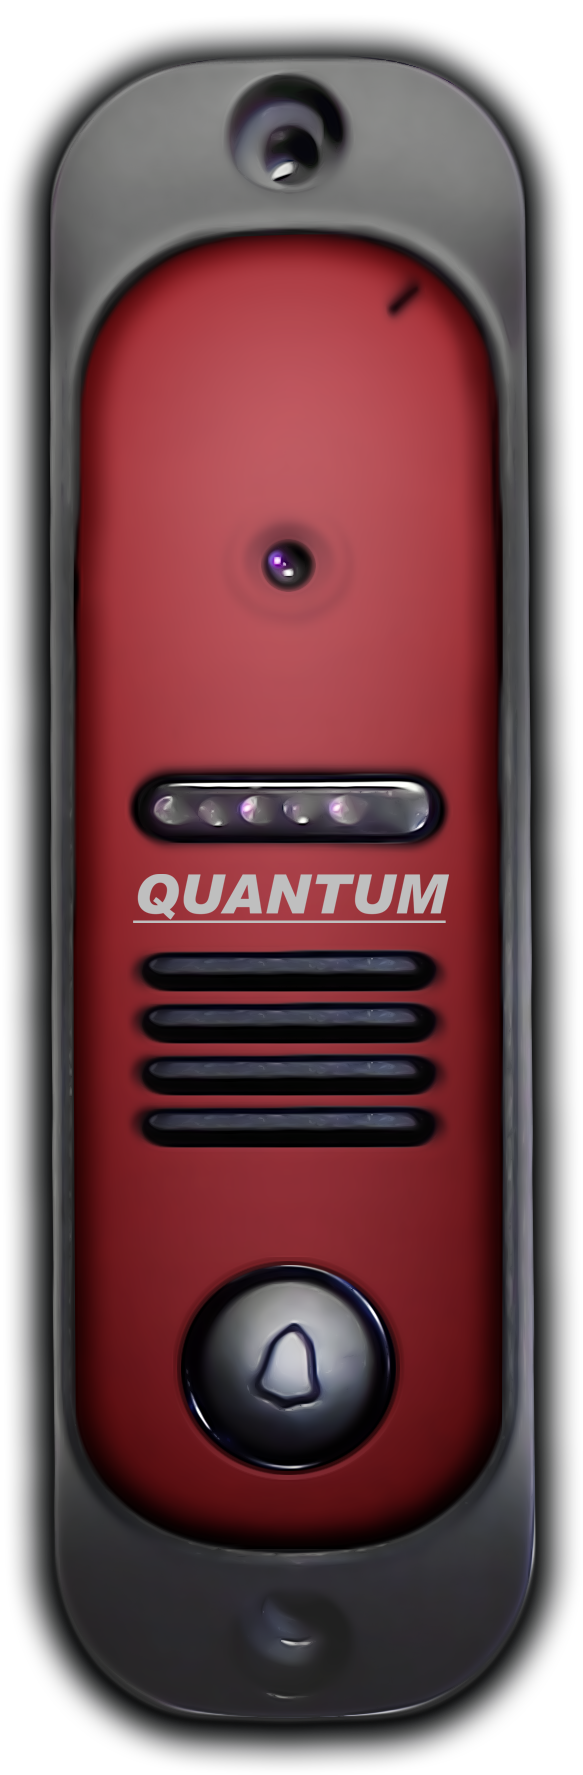 QM-307H (бордовый)         - купить в интернет магазине с доставкой, цены, описание, характеристики, отзывы